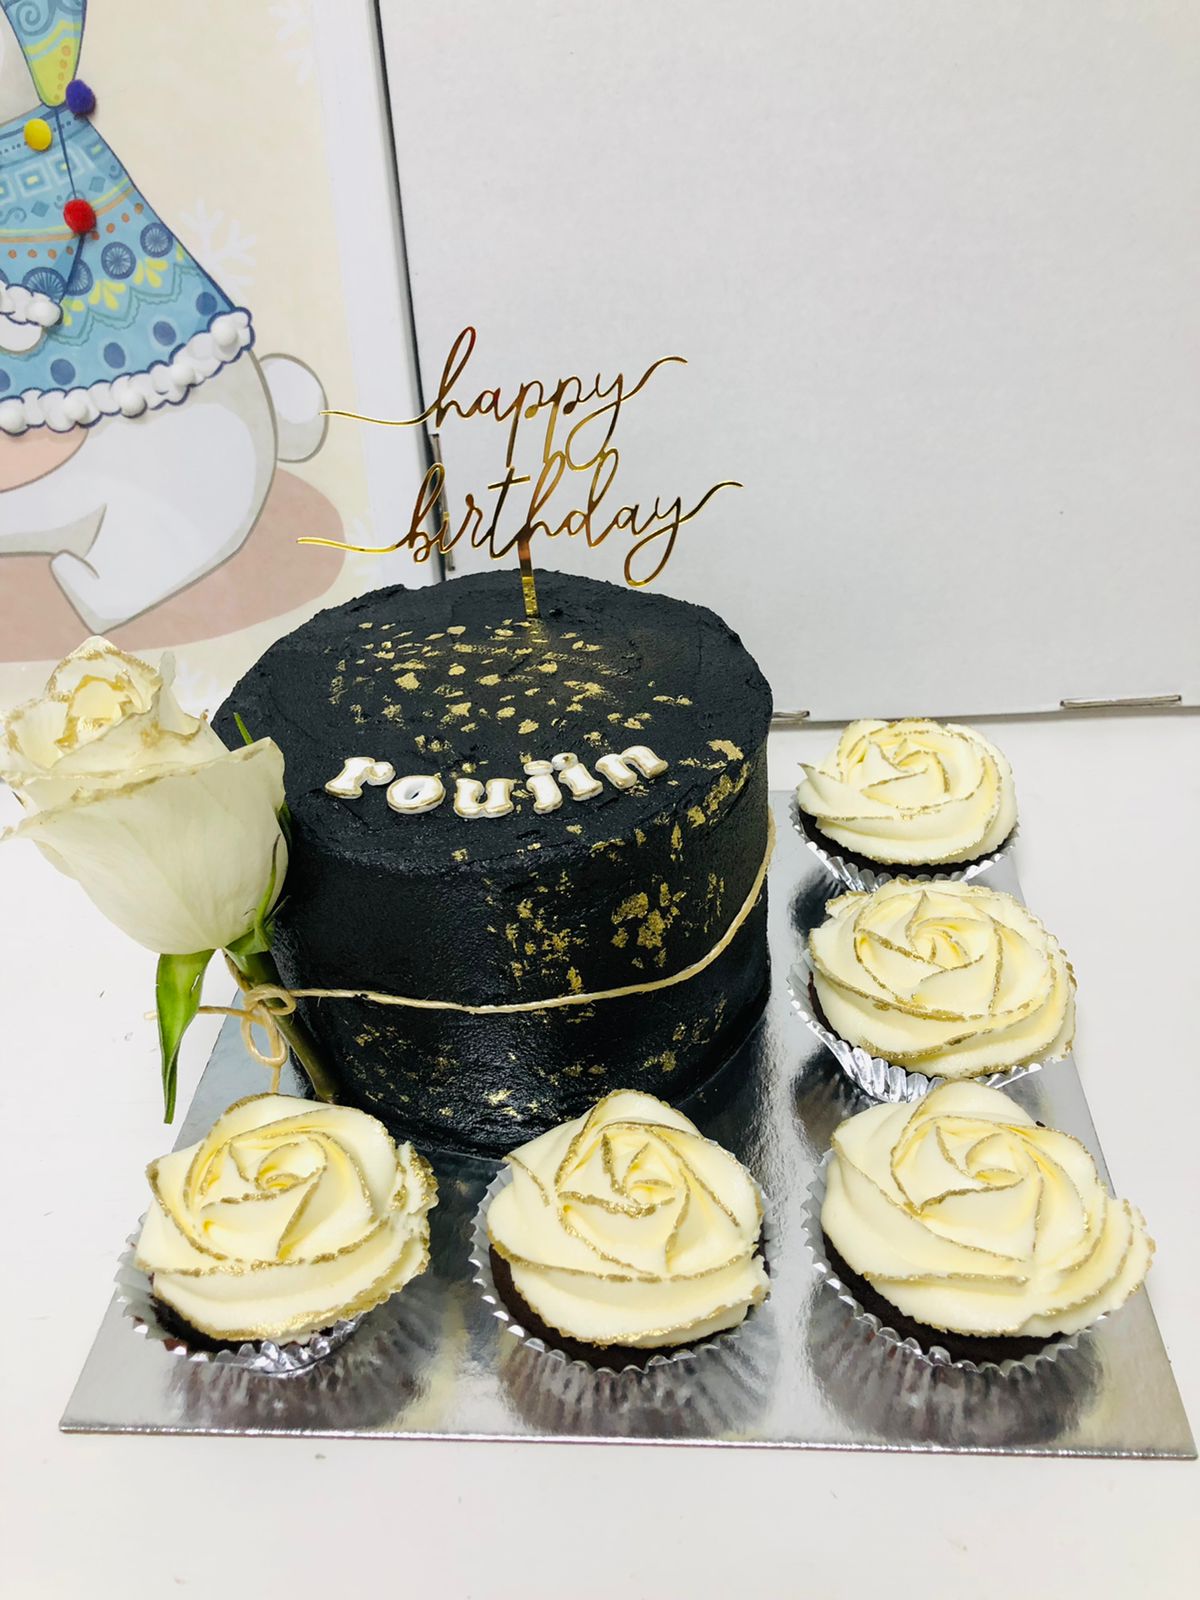 Nicookie.cakes - Customized Cakes in Dubai